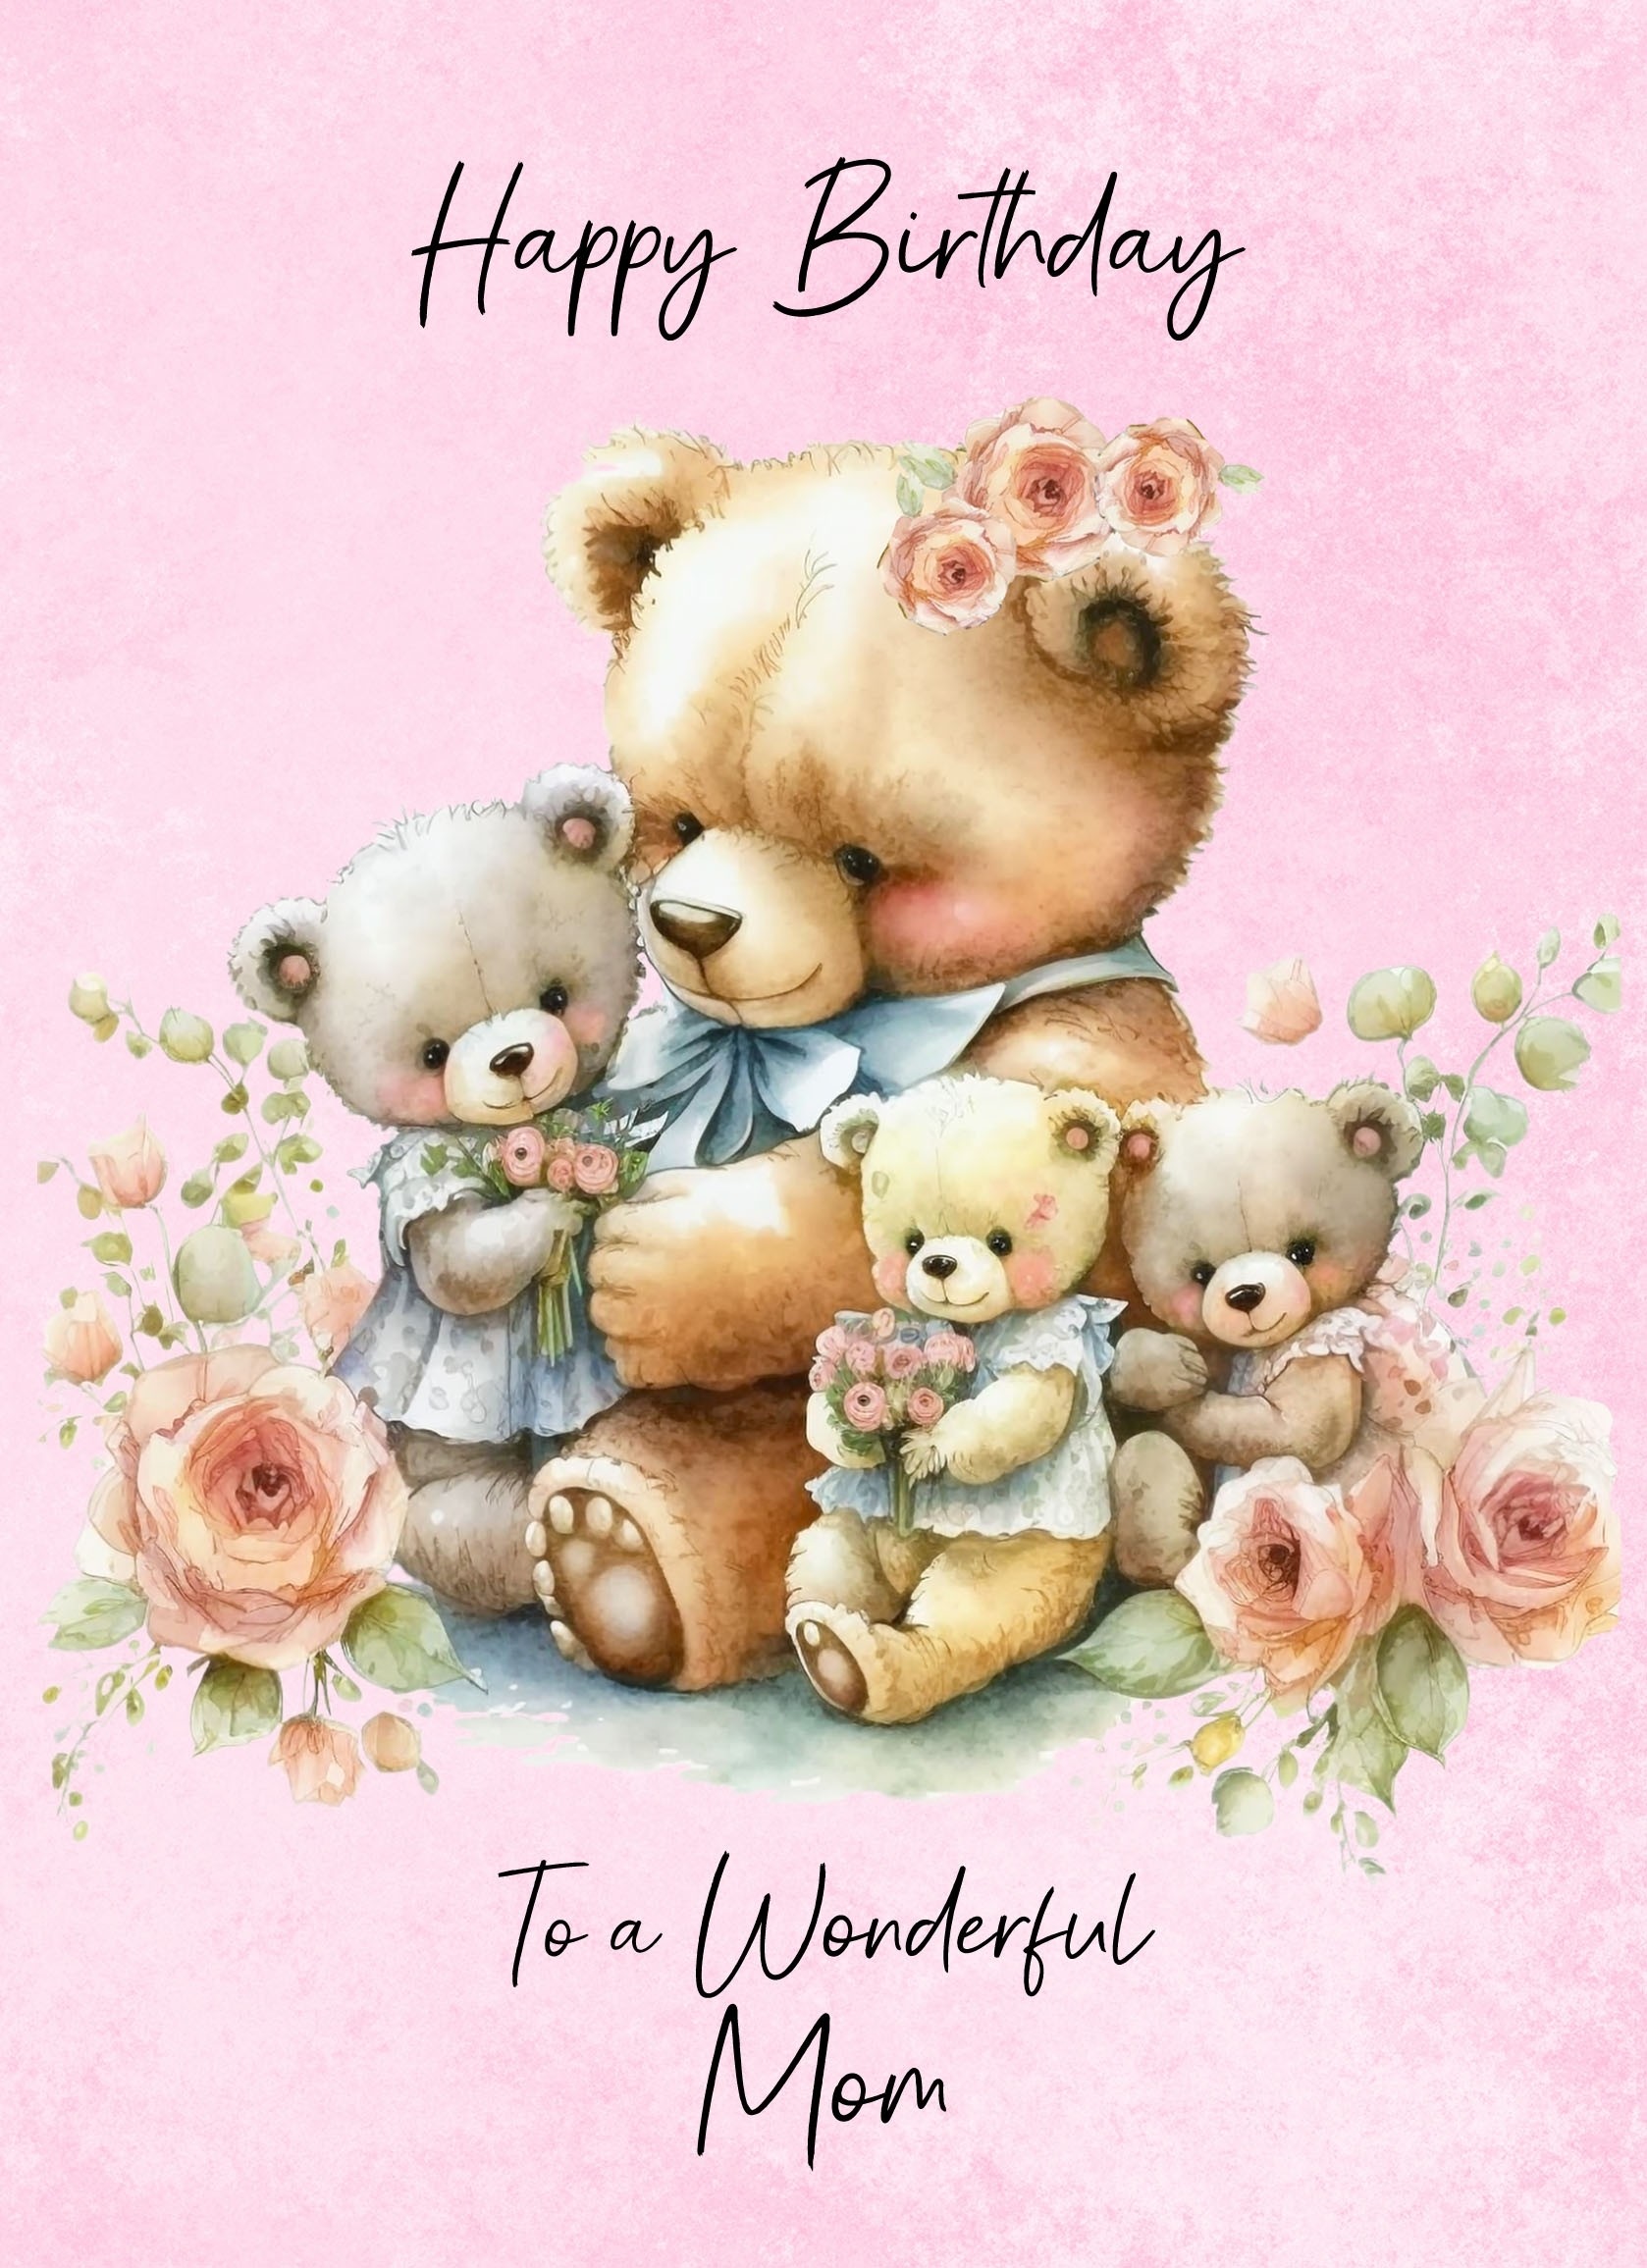 Cuddly Bear Art Birthday Card For Mom (Design 1)